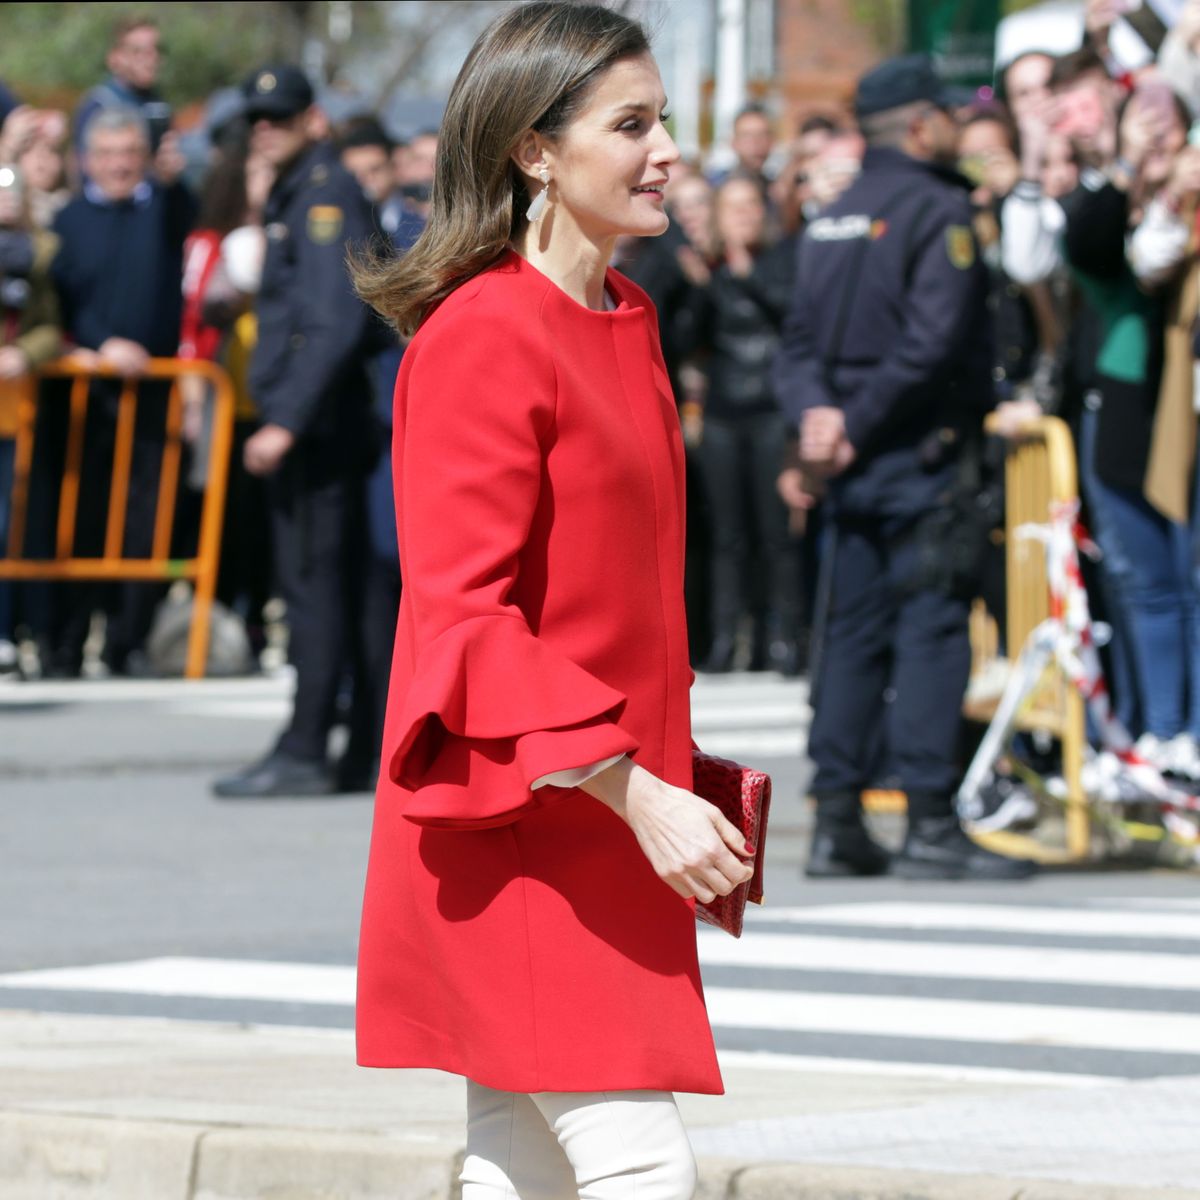 Letizia repite abrigo de Zara - La reina apuesta un total look de